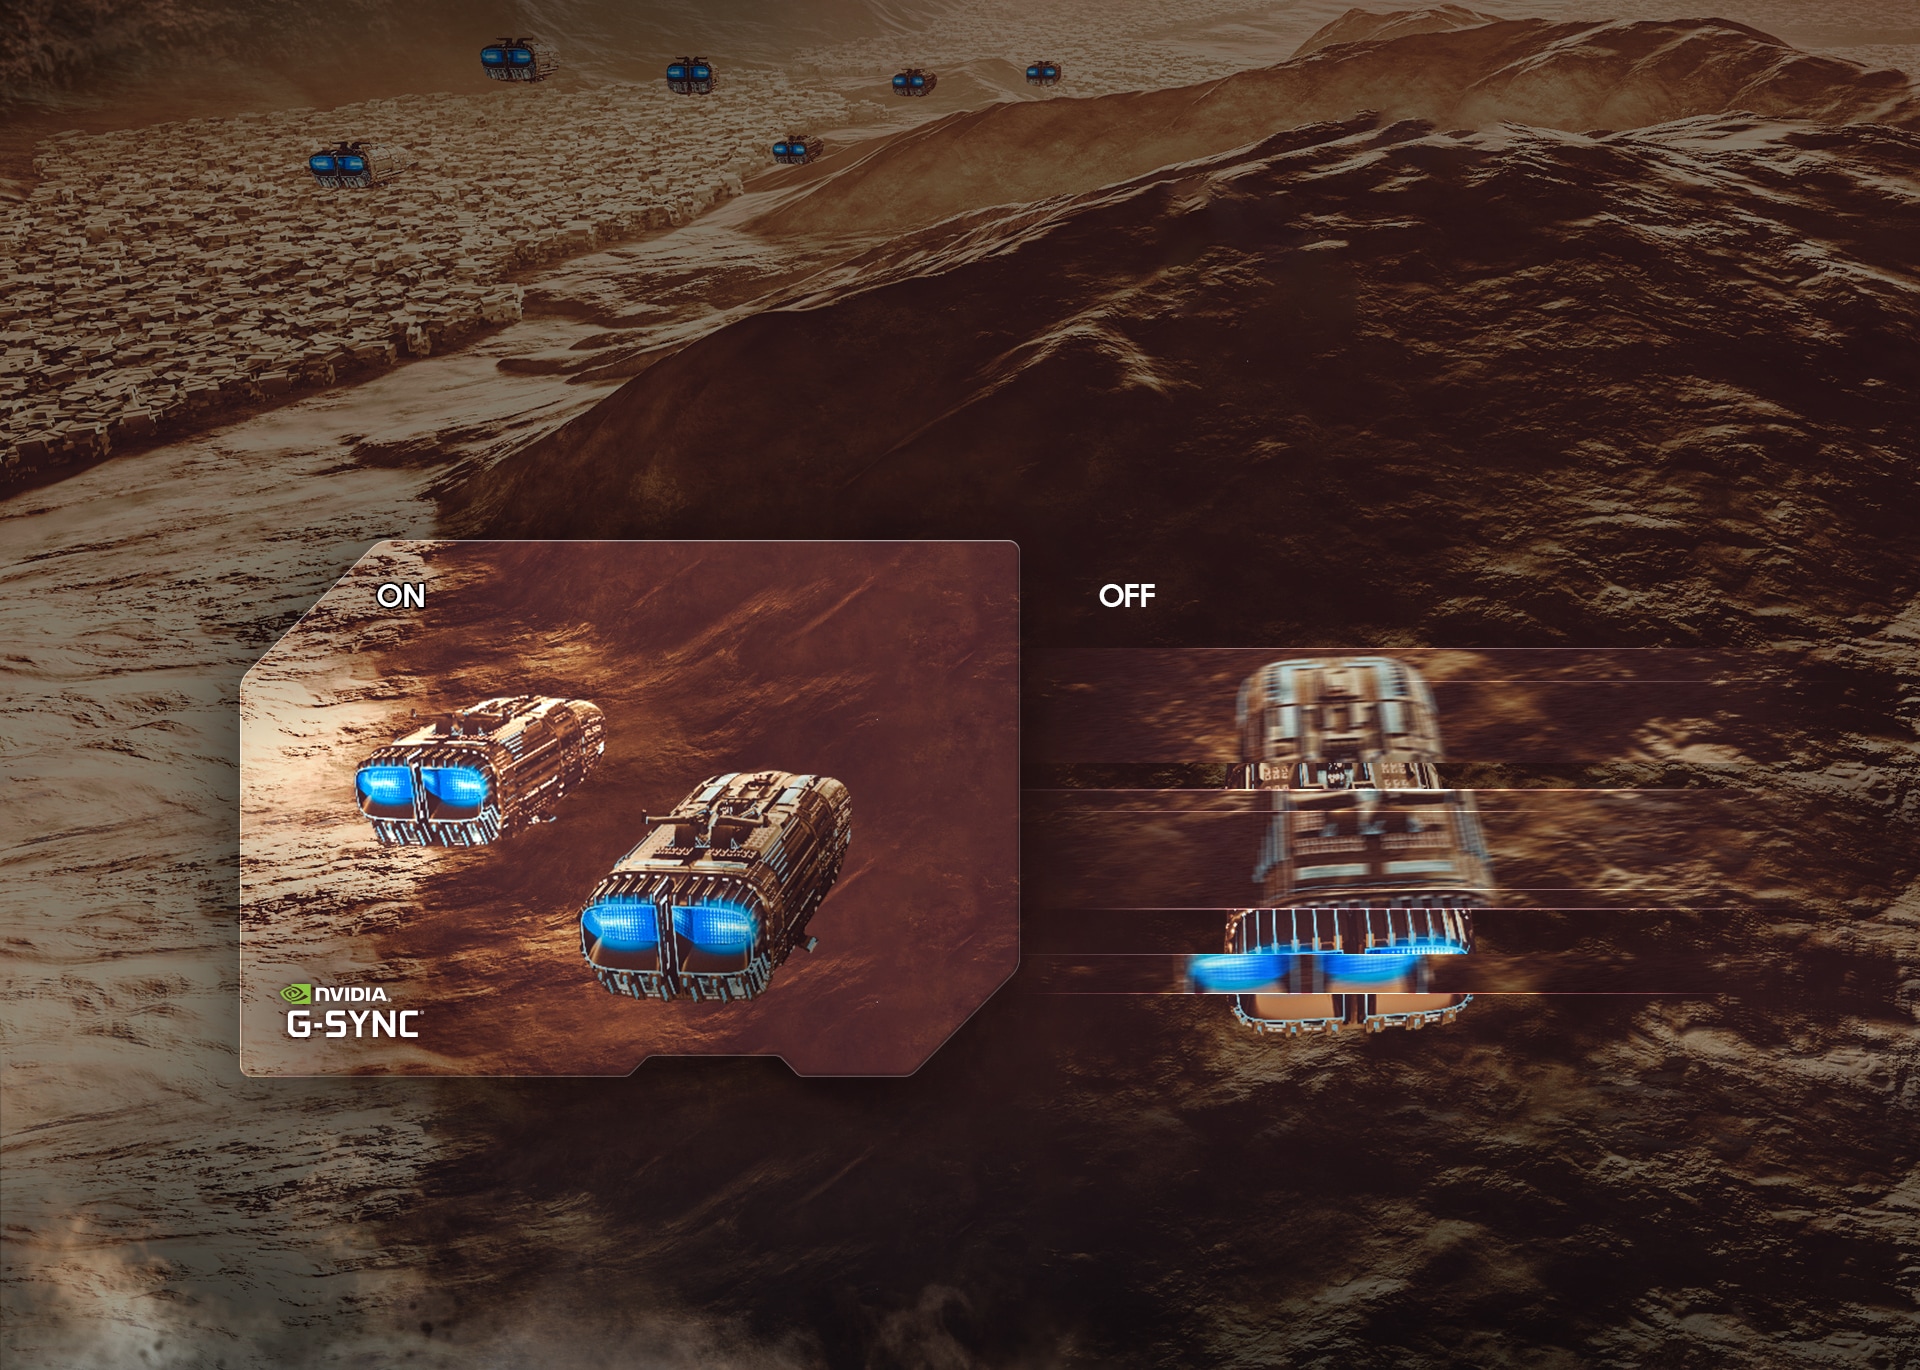 Drie ruimteschepen met blauw neonlicht aan de achterkant vliegen over een rotsachtig terrein. Boven de twee ruimteschepen links staat ON en is het NVIDIA G-SYNC logo te zien en het beeld is haarscherp en vloeiend. Boven het ruimteschip rechts staat OFF en het beeld is gefragmenteerd en lijkt vertraagd binnen te komen.